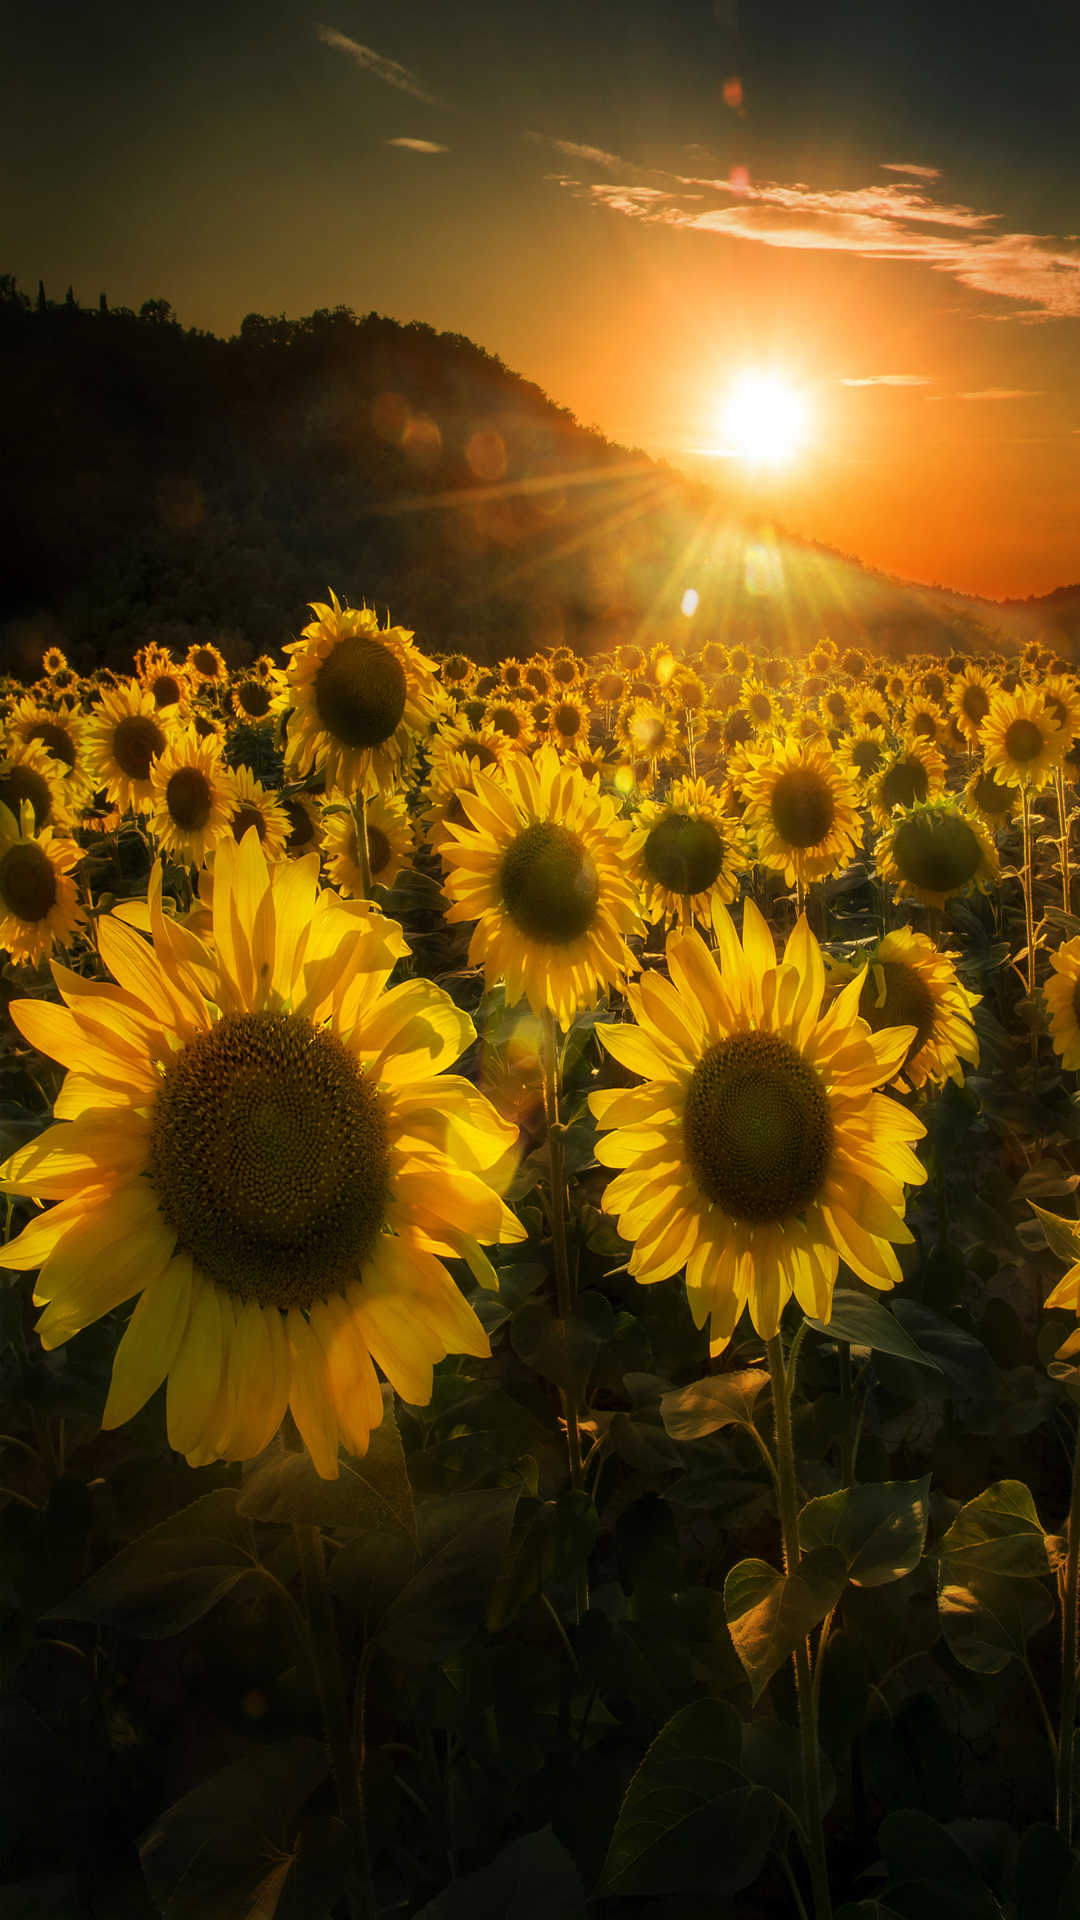 Sunflowers Sunset , HD Wallpaper & Backgrounds